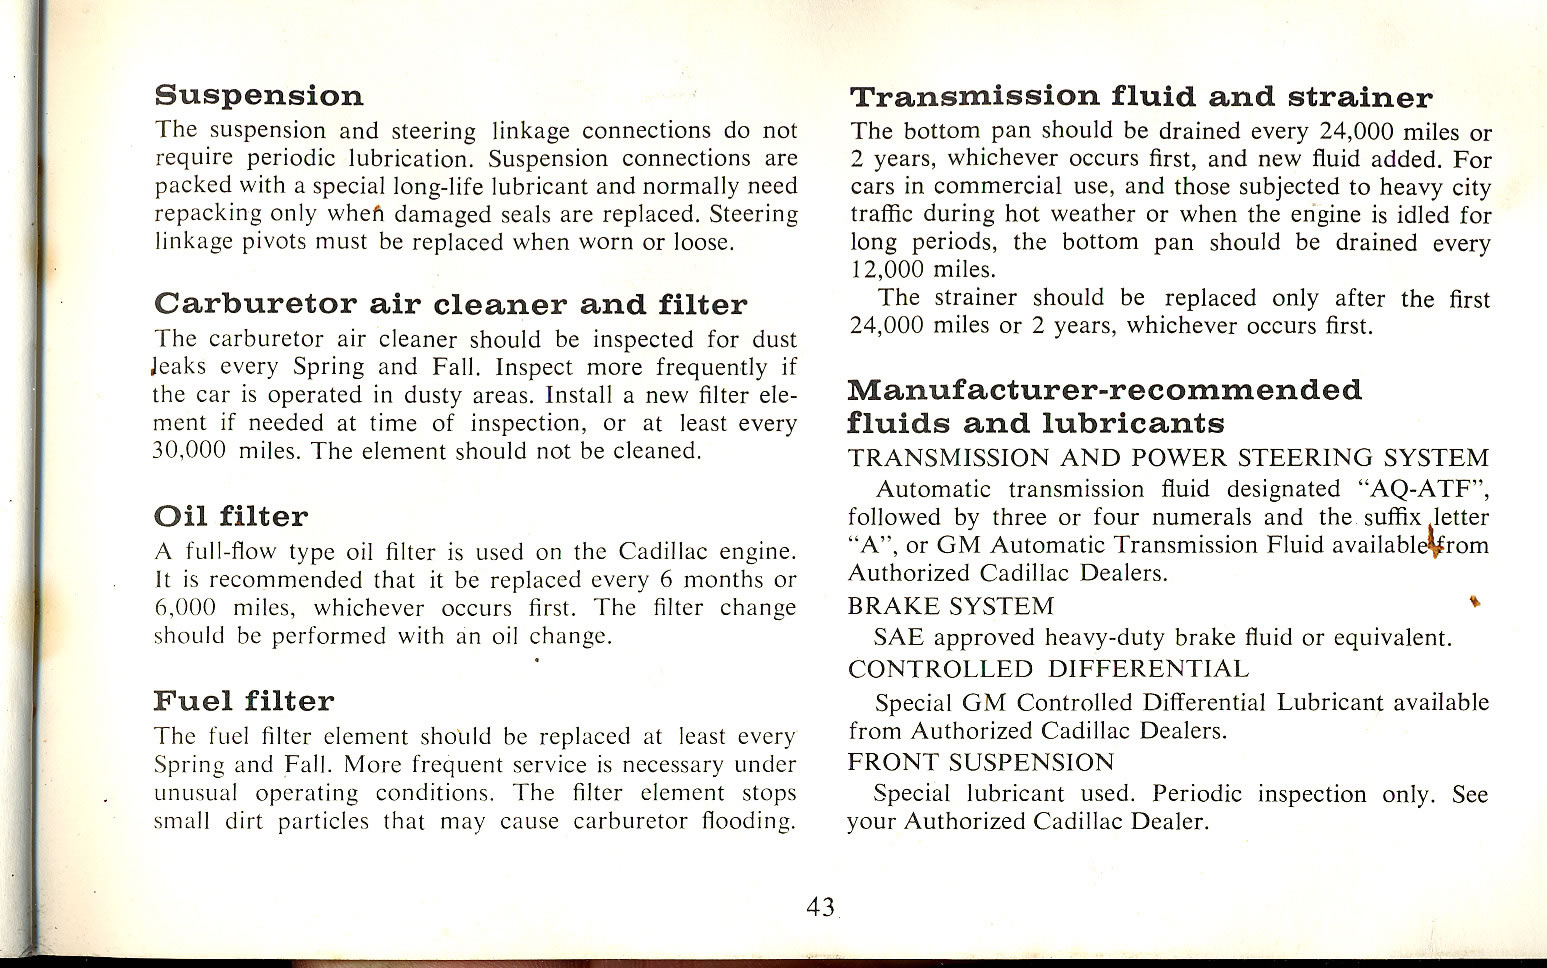 1965 Cadillac Manual-43